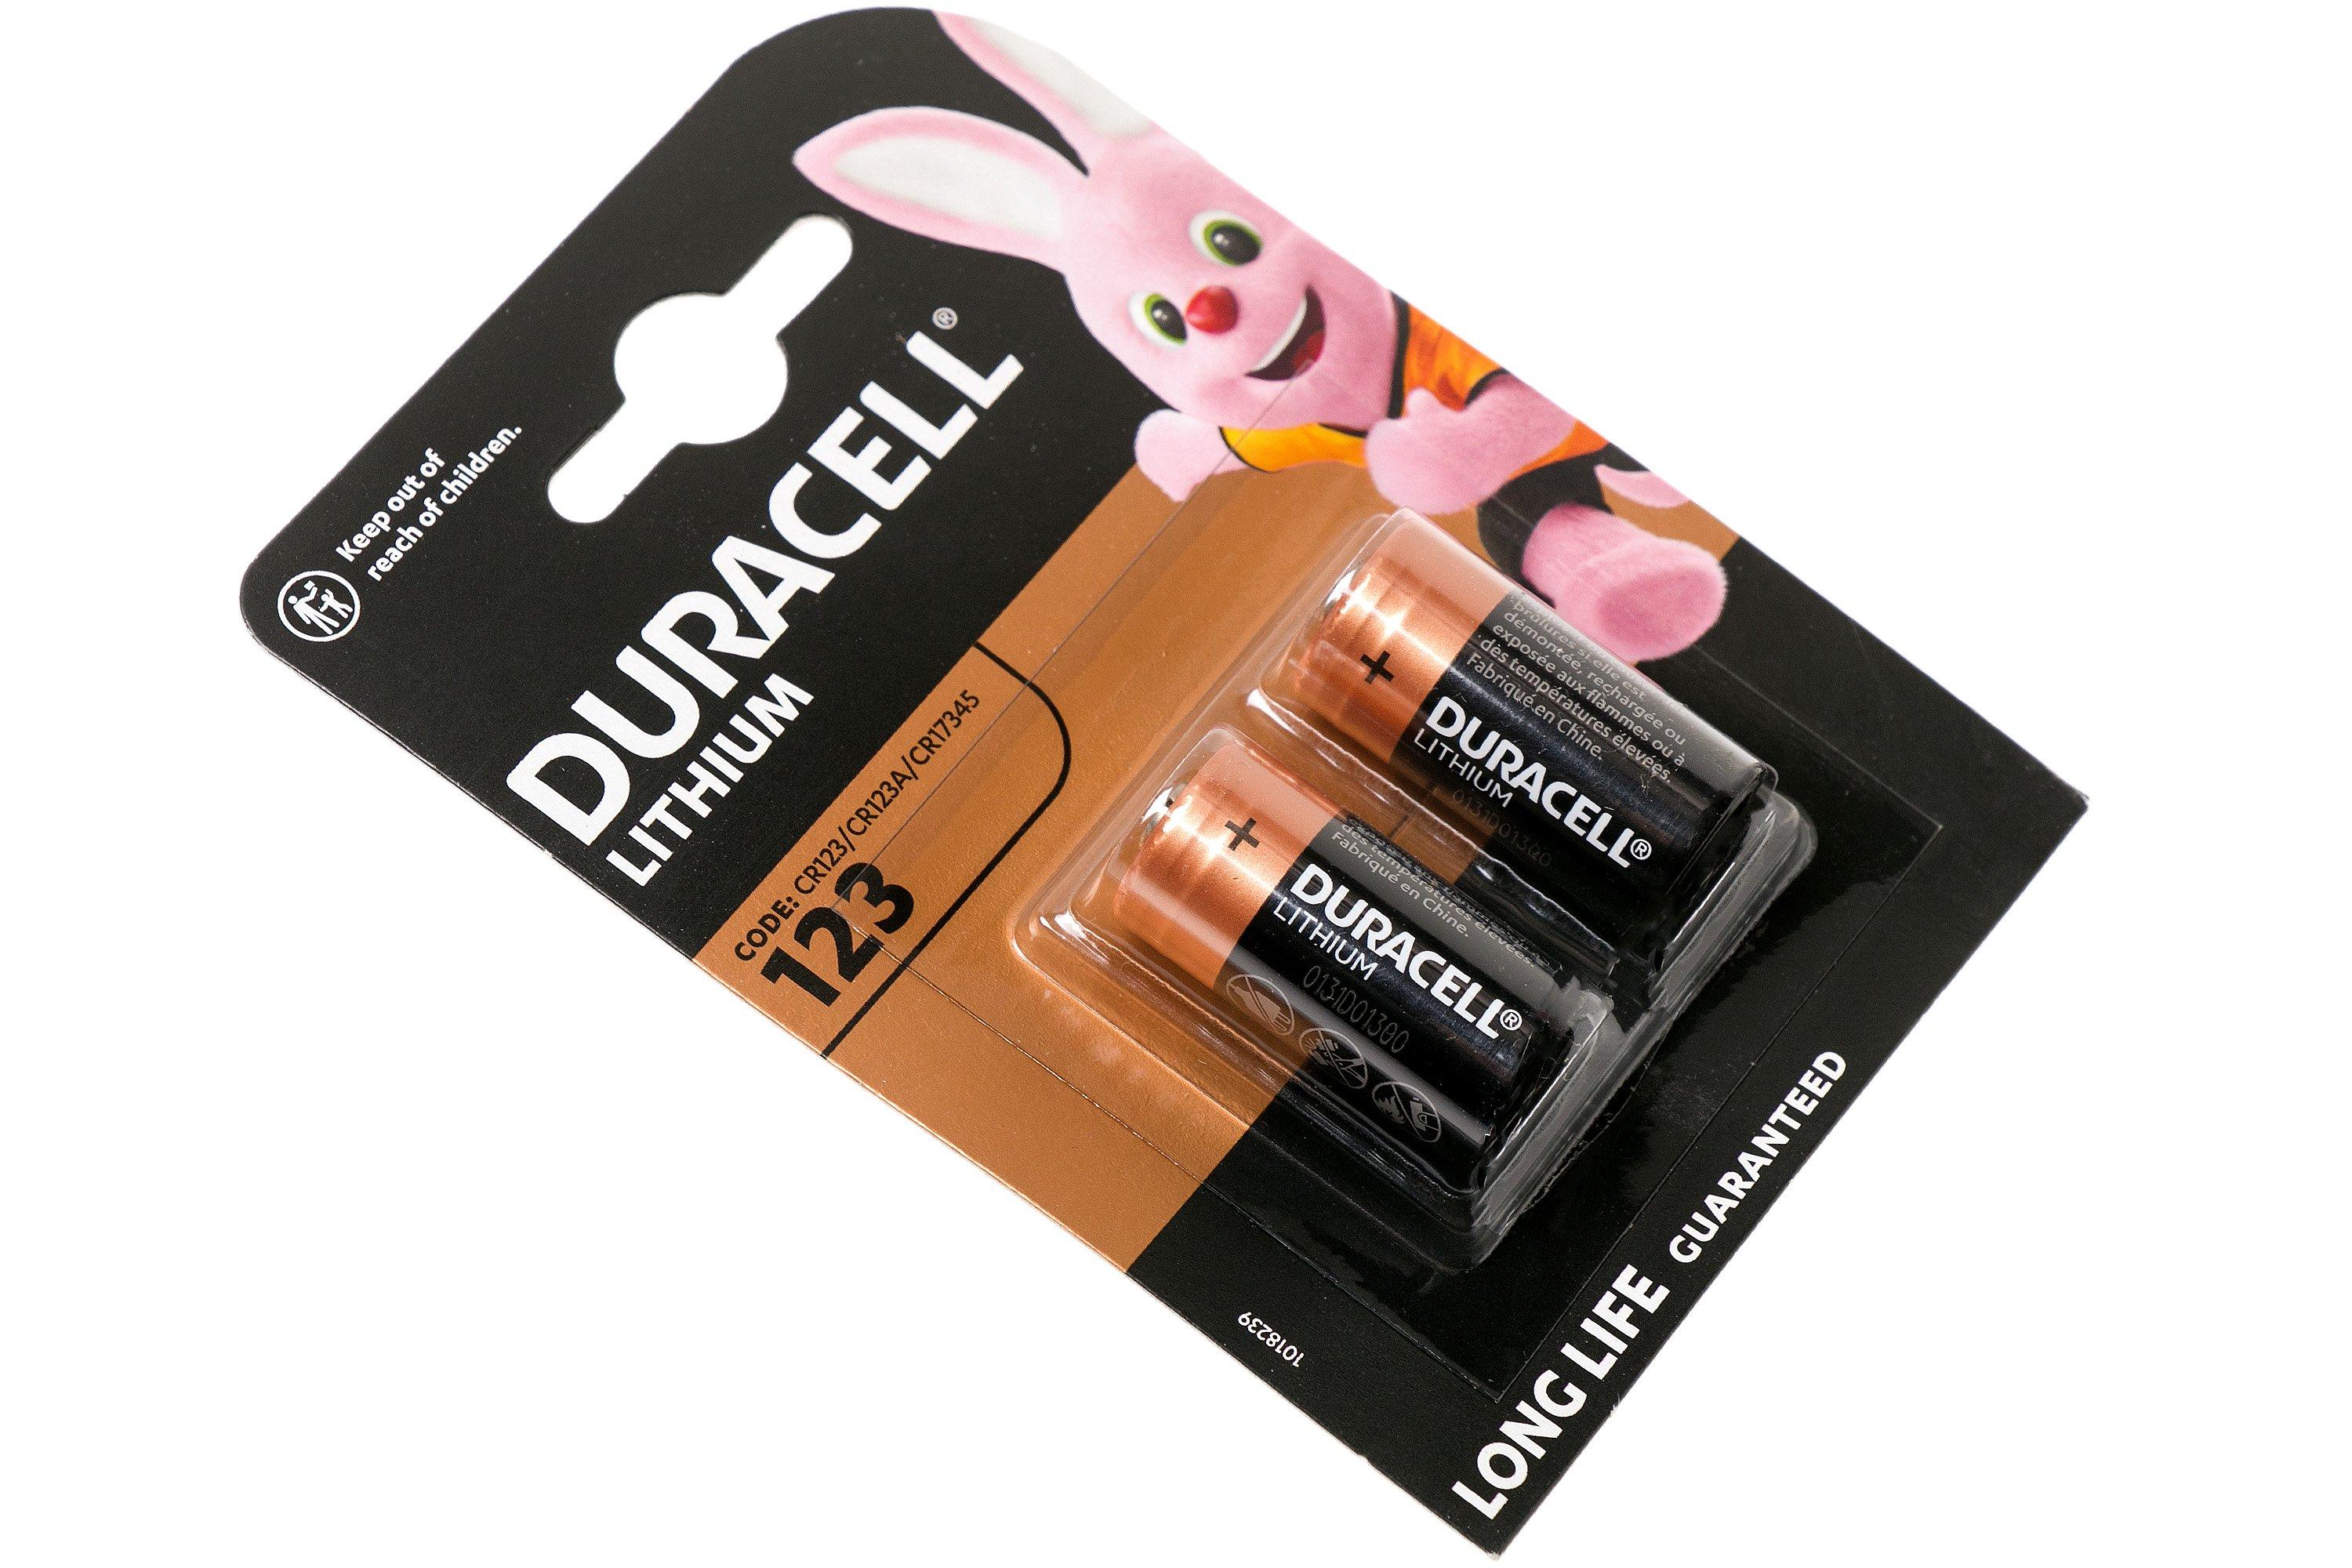 Convergeren Hardheid Sprong Duracell CR123 batterijen, 2 stuks | Voordelig kopen bij knivesandtools.be